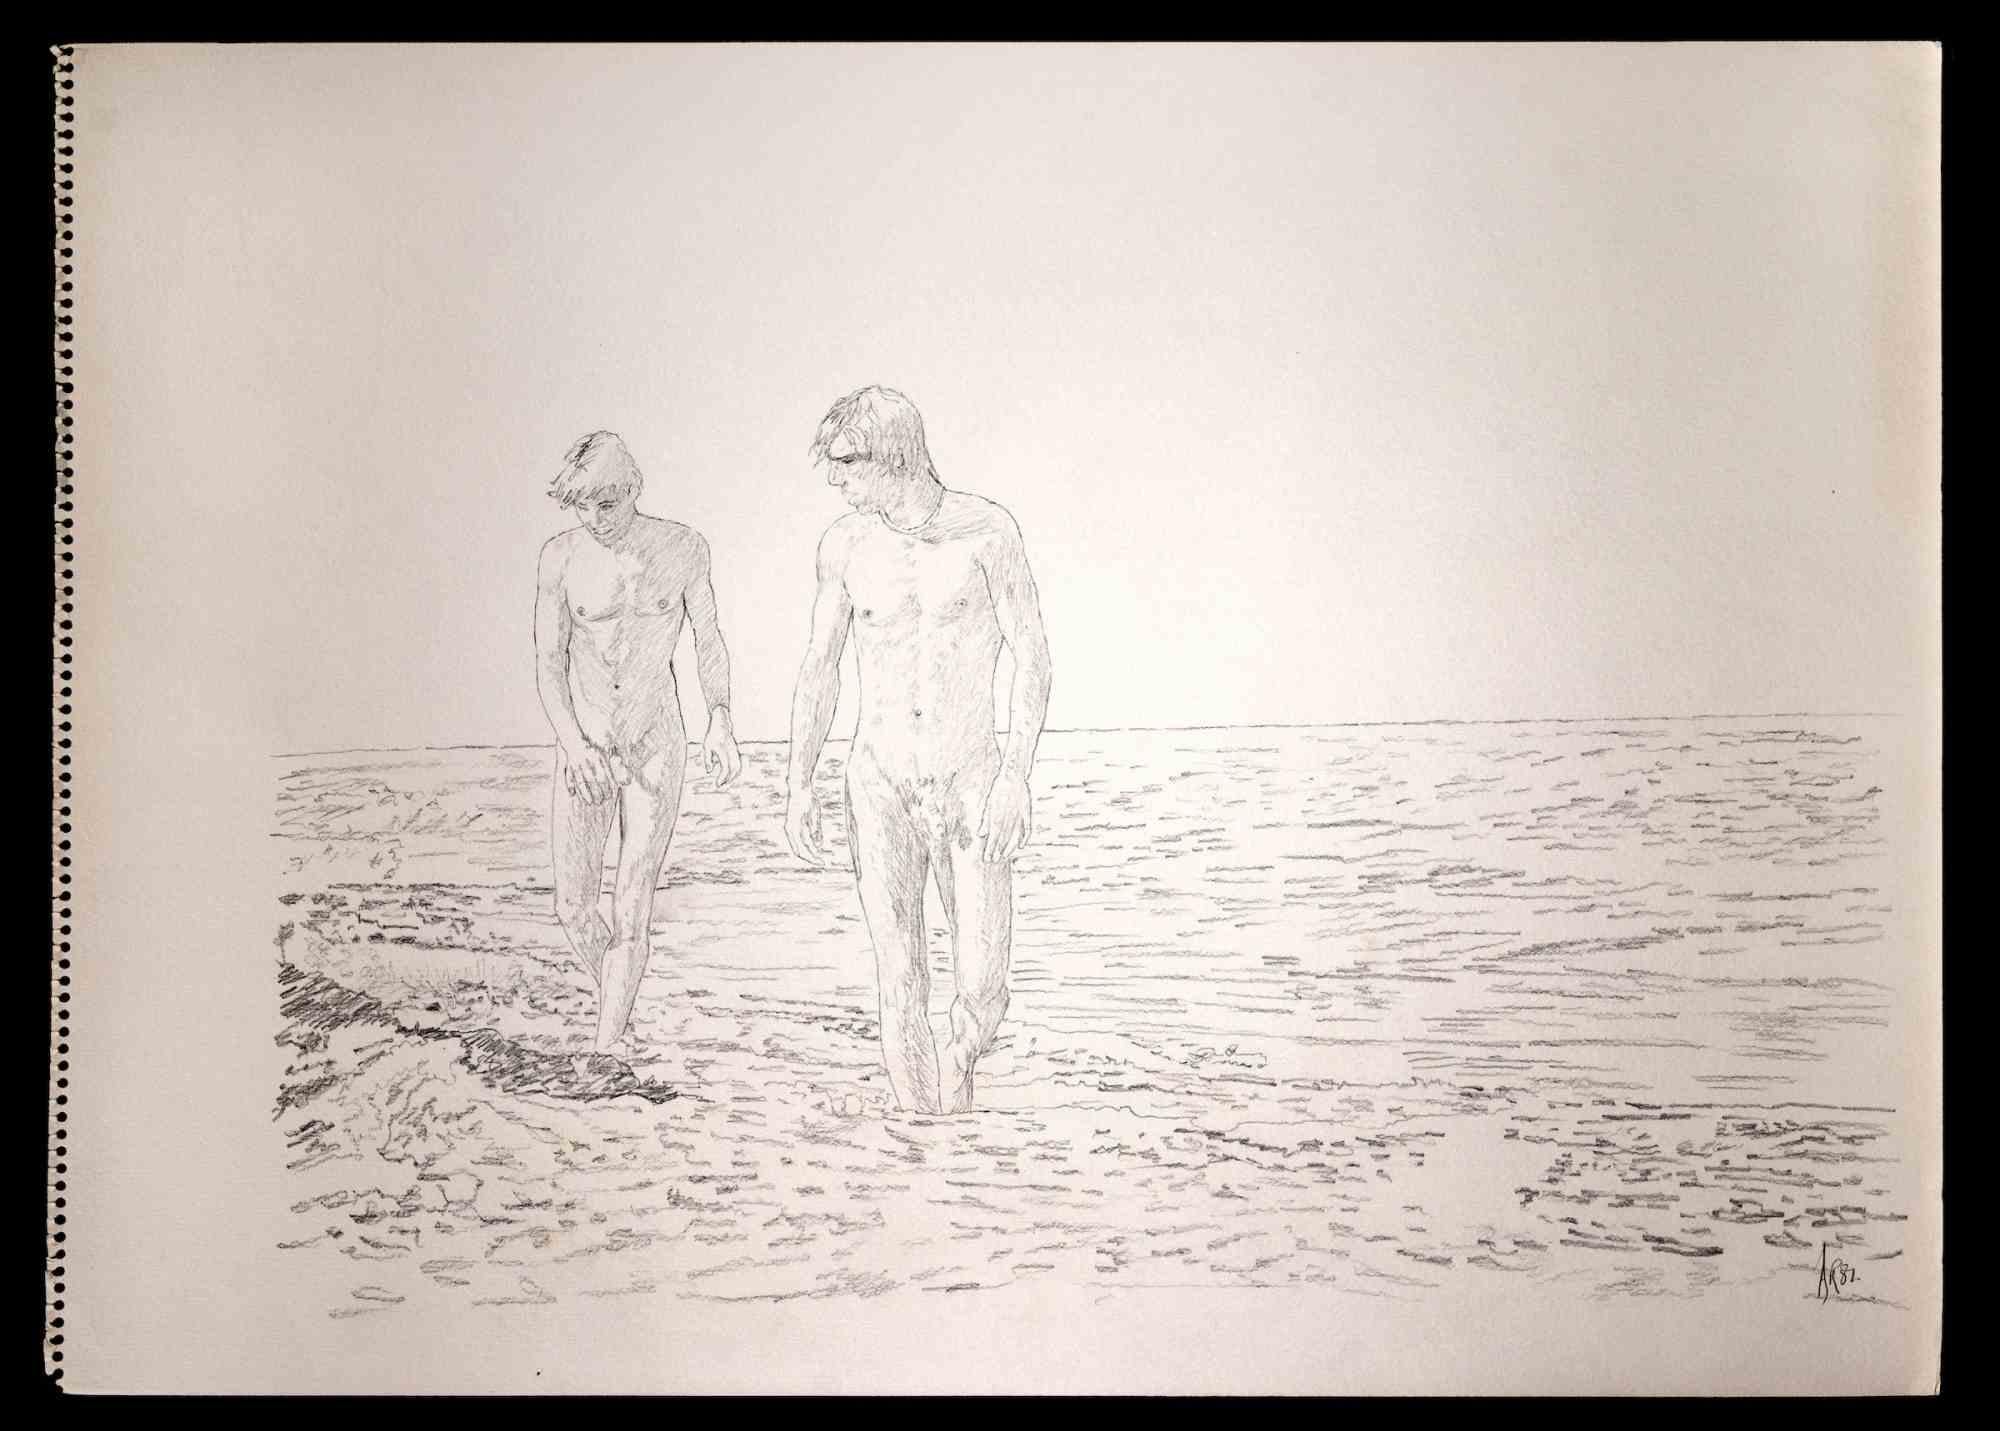 Zwei Freunde beim Strand gehen - Originalzeichnung von Anthony Roaland - 1981